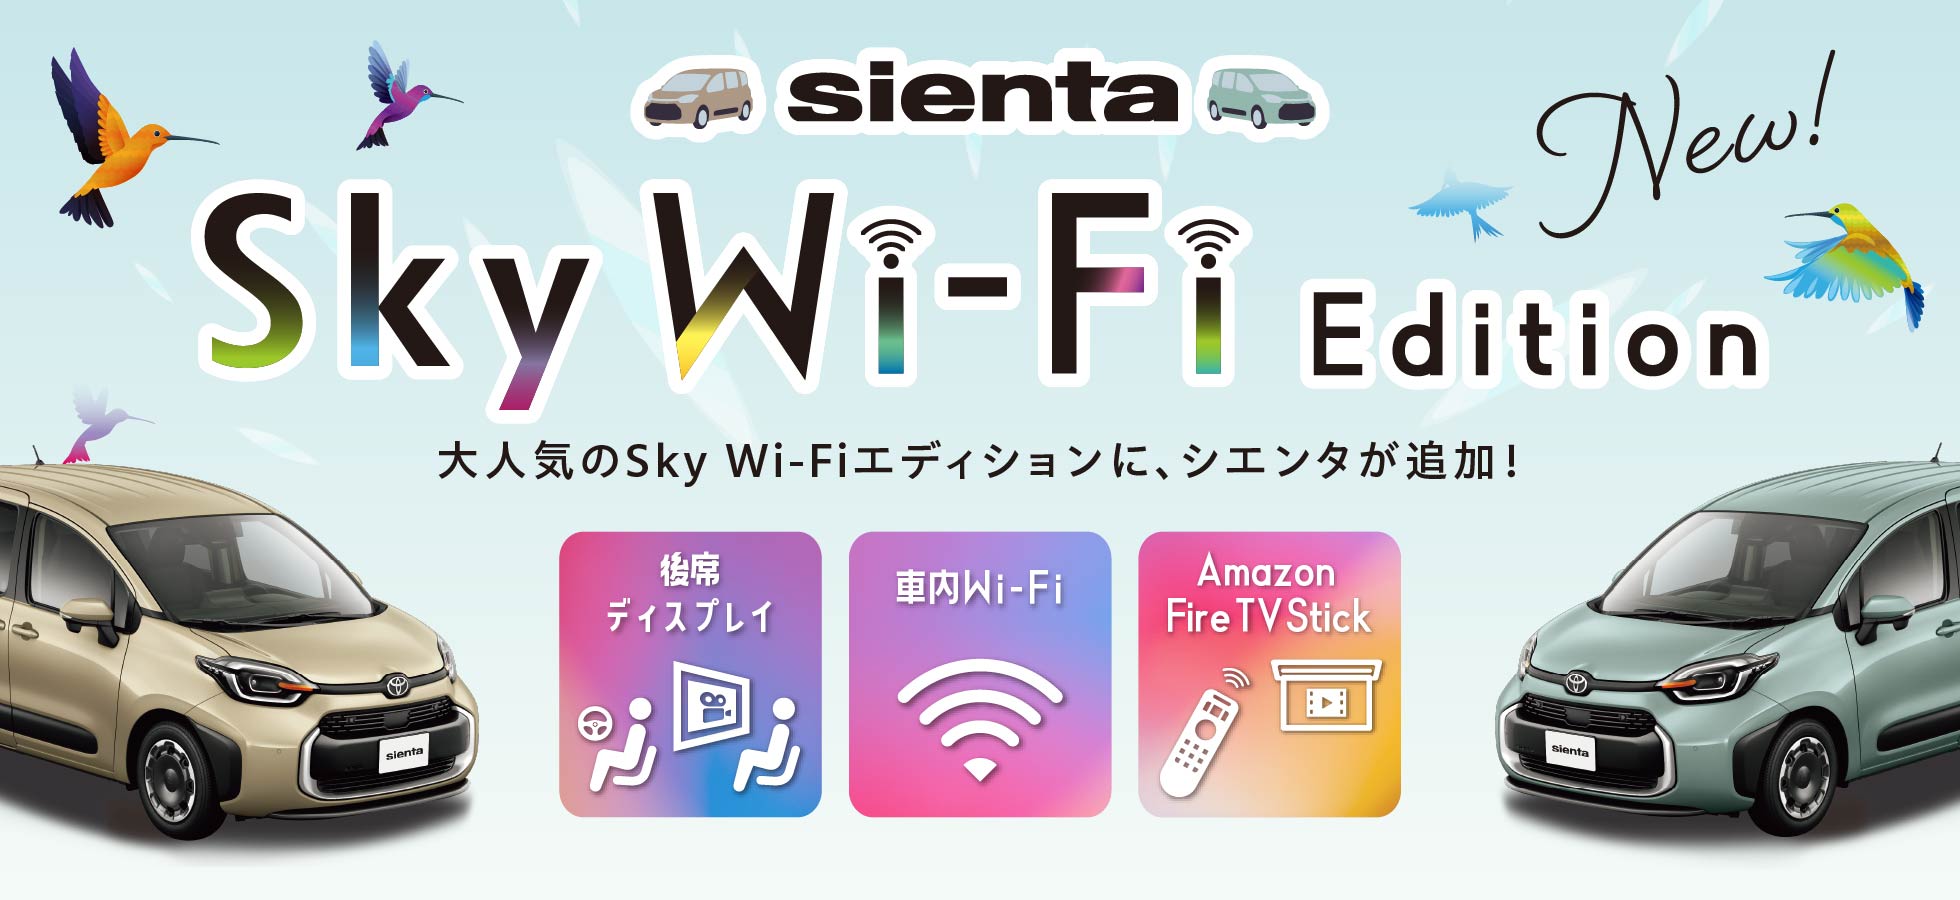 SIENTA Sky Wi-Fi Edition デビュー!